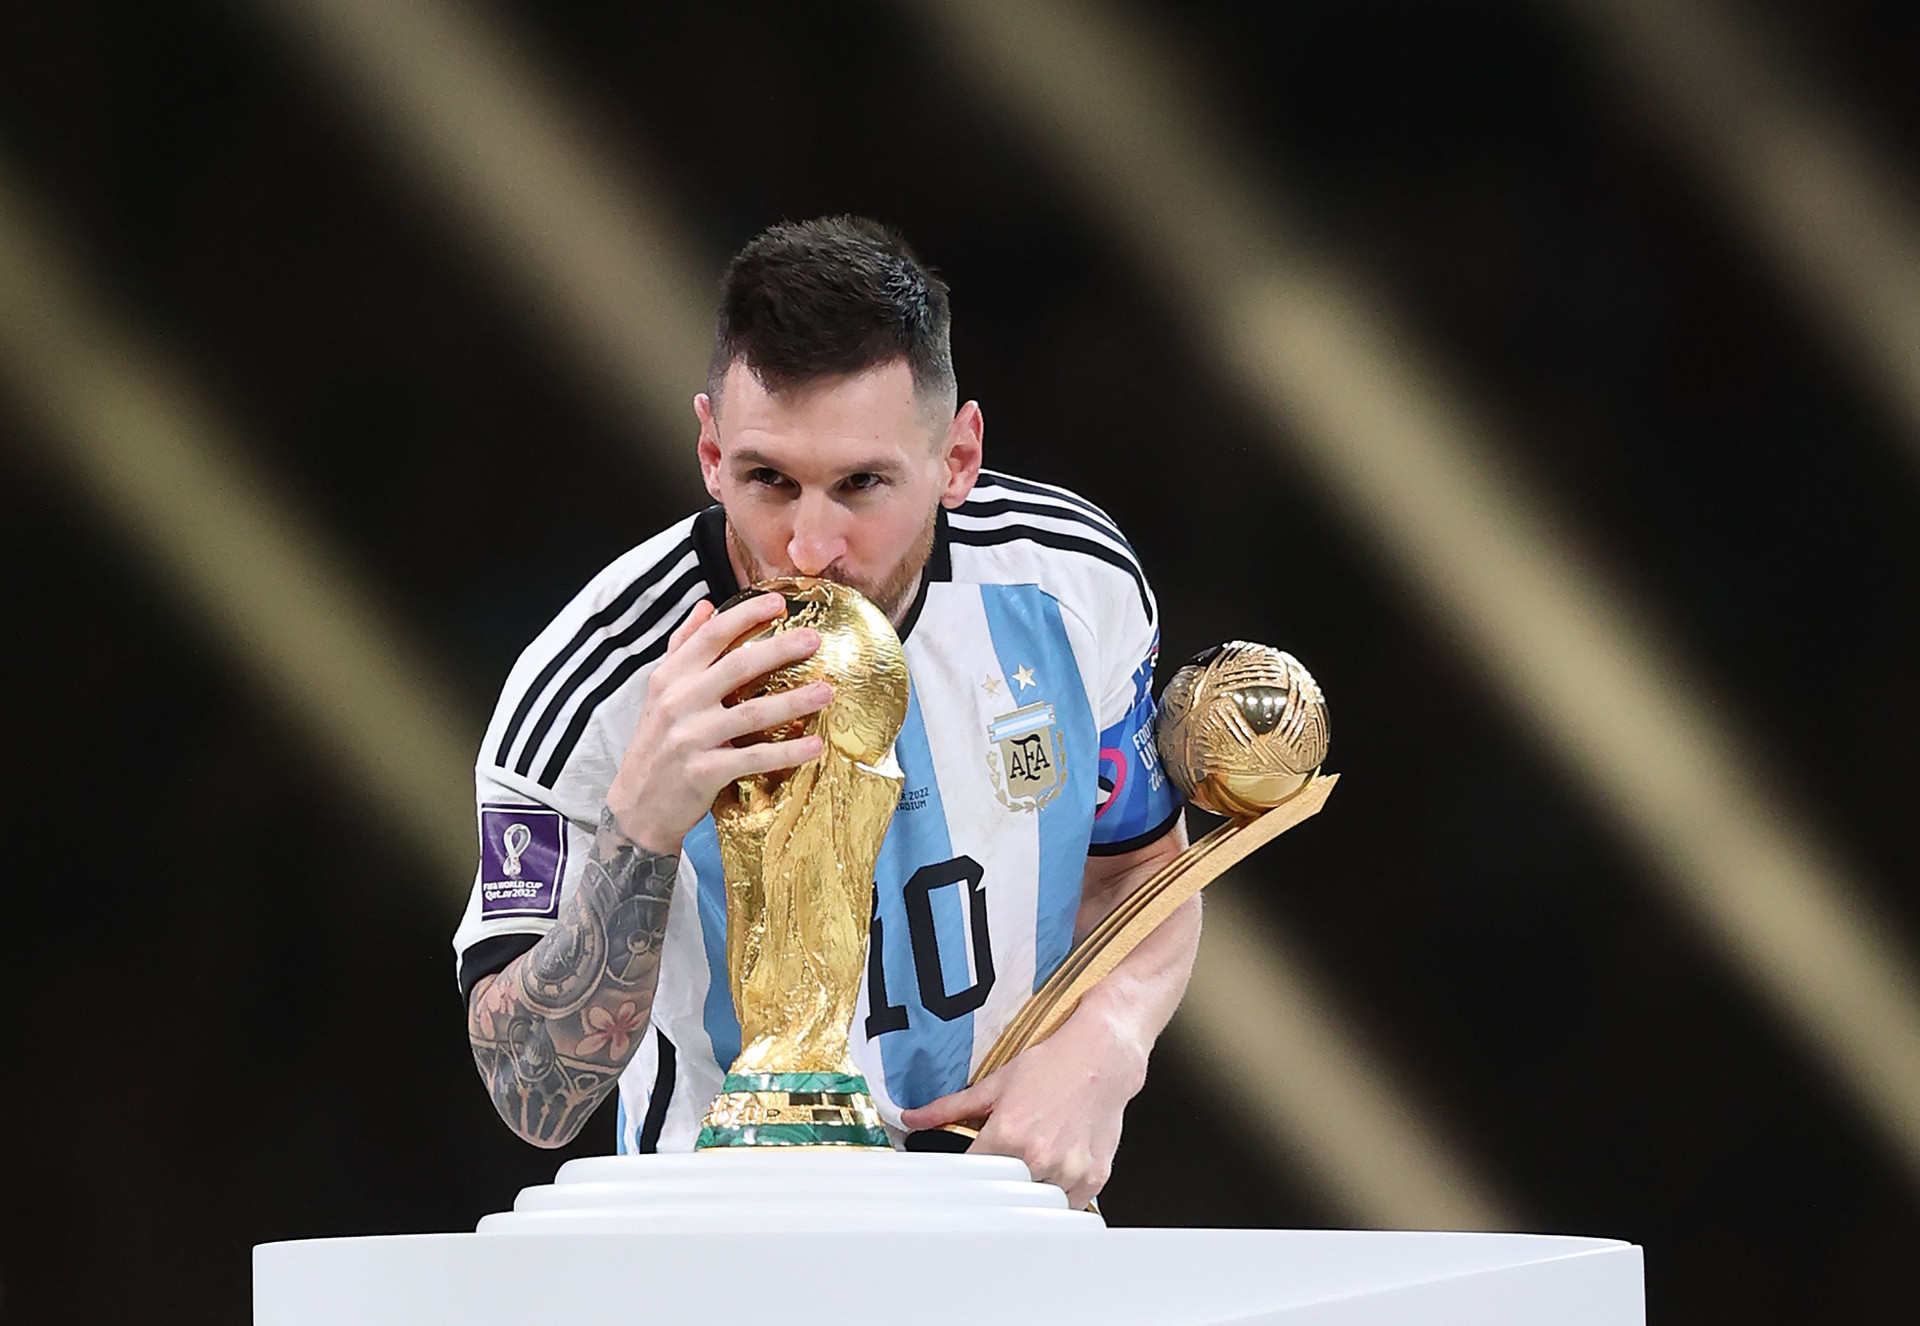 Cúp vàng World Cup là giấc mơ của bất kỳ cầu thủ bóng đá nào, và Messi cũng vậy. Dù chưa bao giờ nâng cao được chiếc cúp này, anh vẫn là người hùng của rất nhiều người hâm mộ. Hãy cùng xem hình ảnh của Messi trong cuộc đua tới chiếc cúp vàng World Cup nhé!